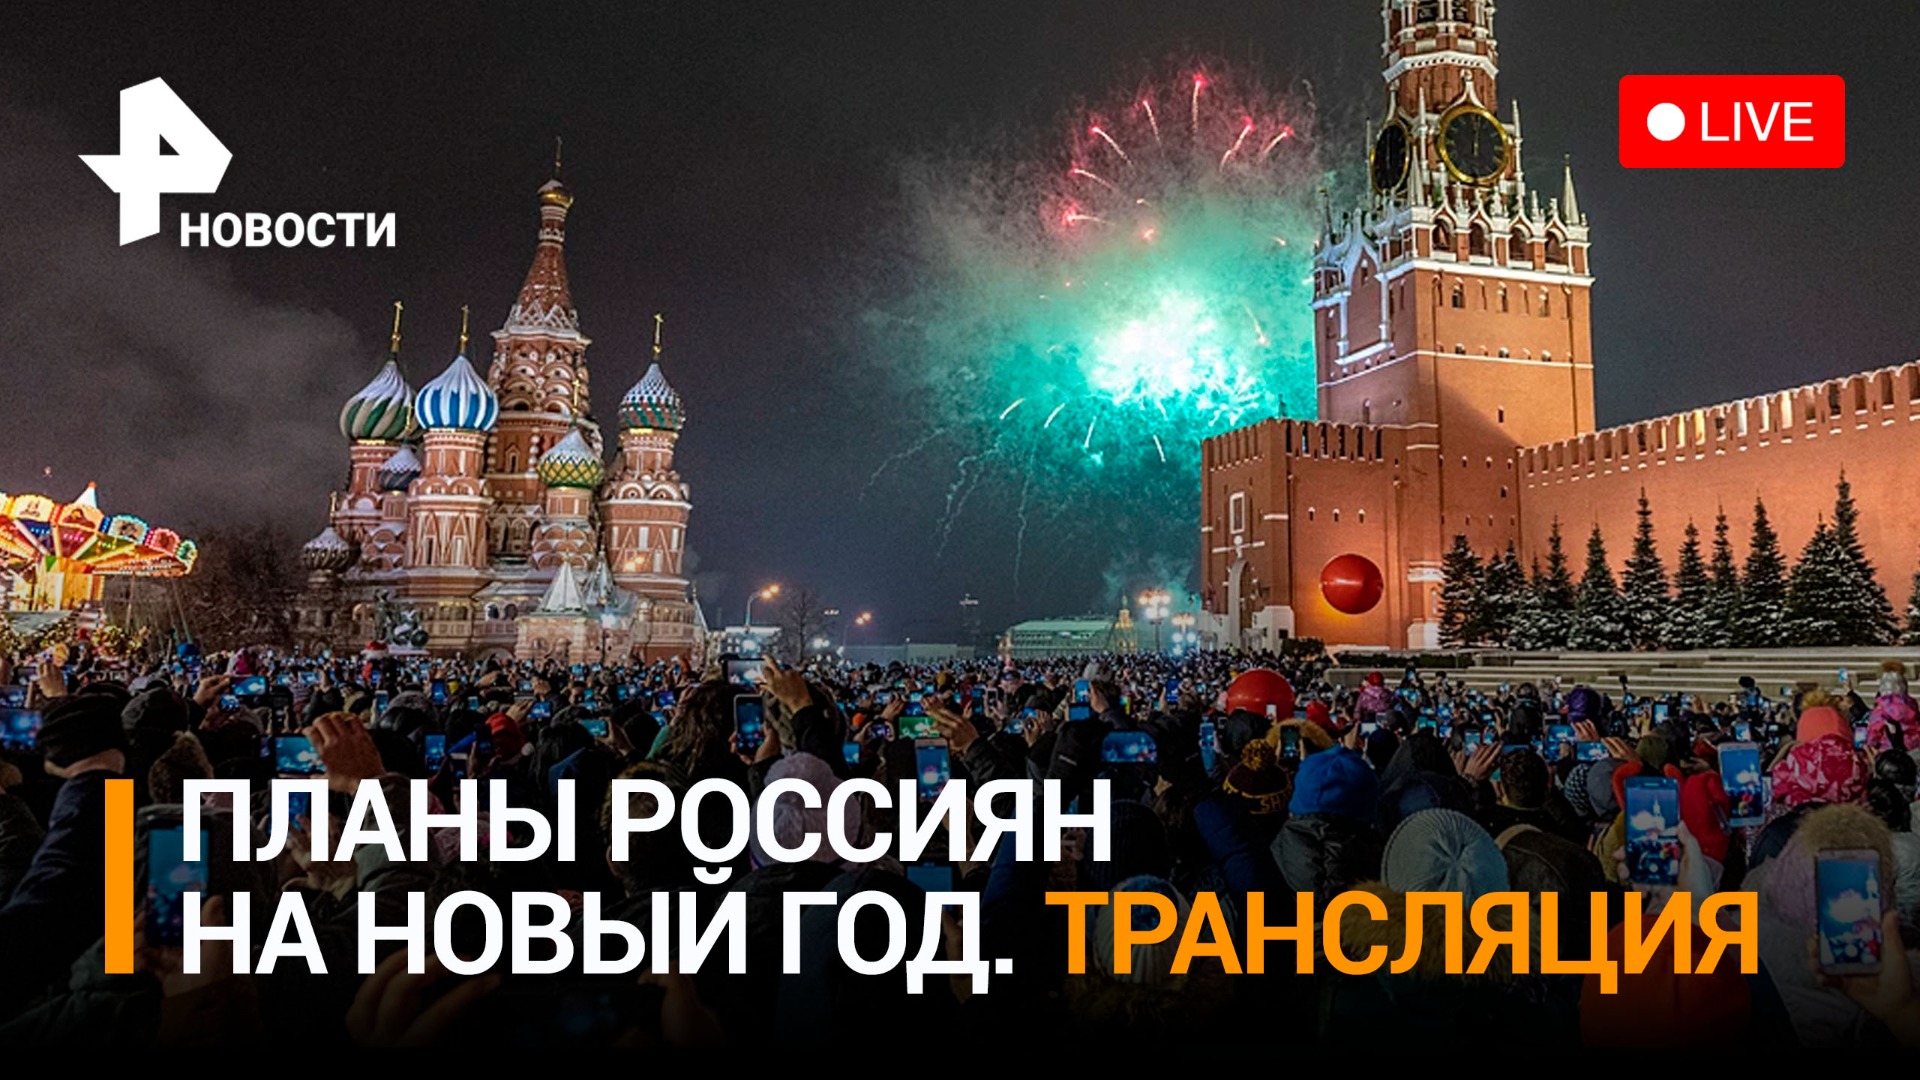 Новый год, россияне и туризм: обсудим планы на праздники / РЕН Новости